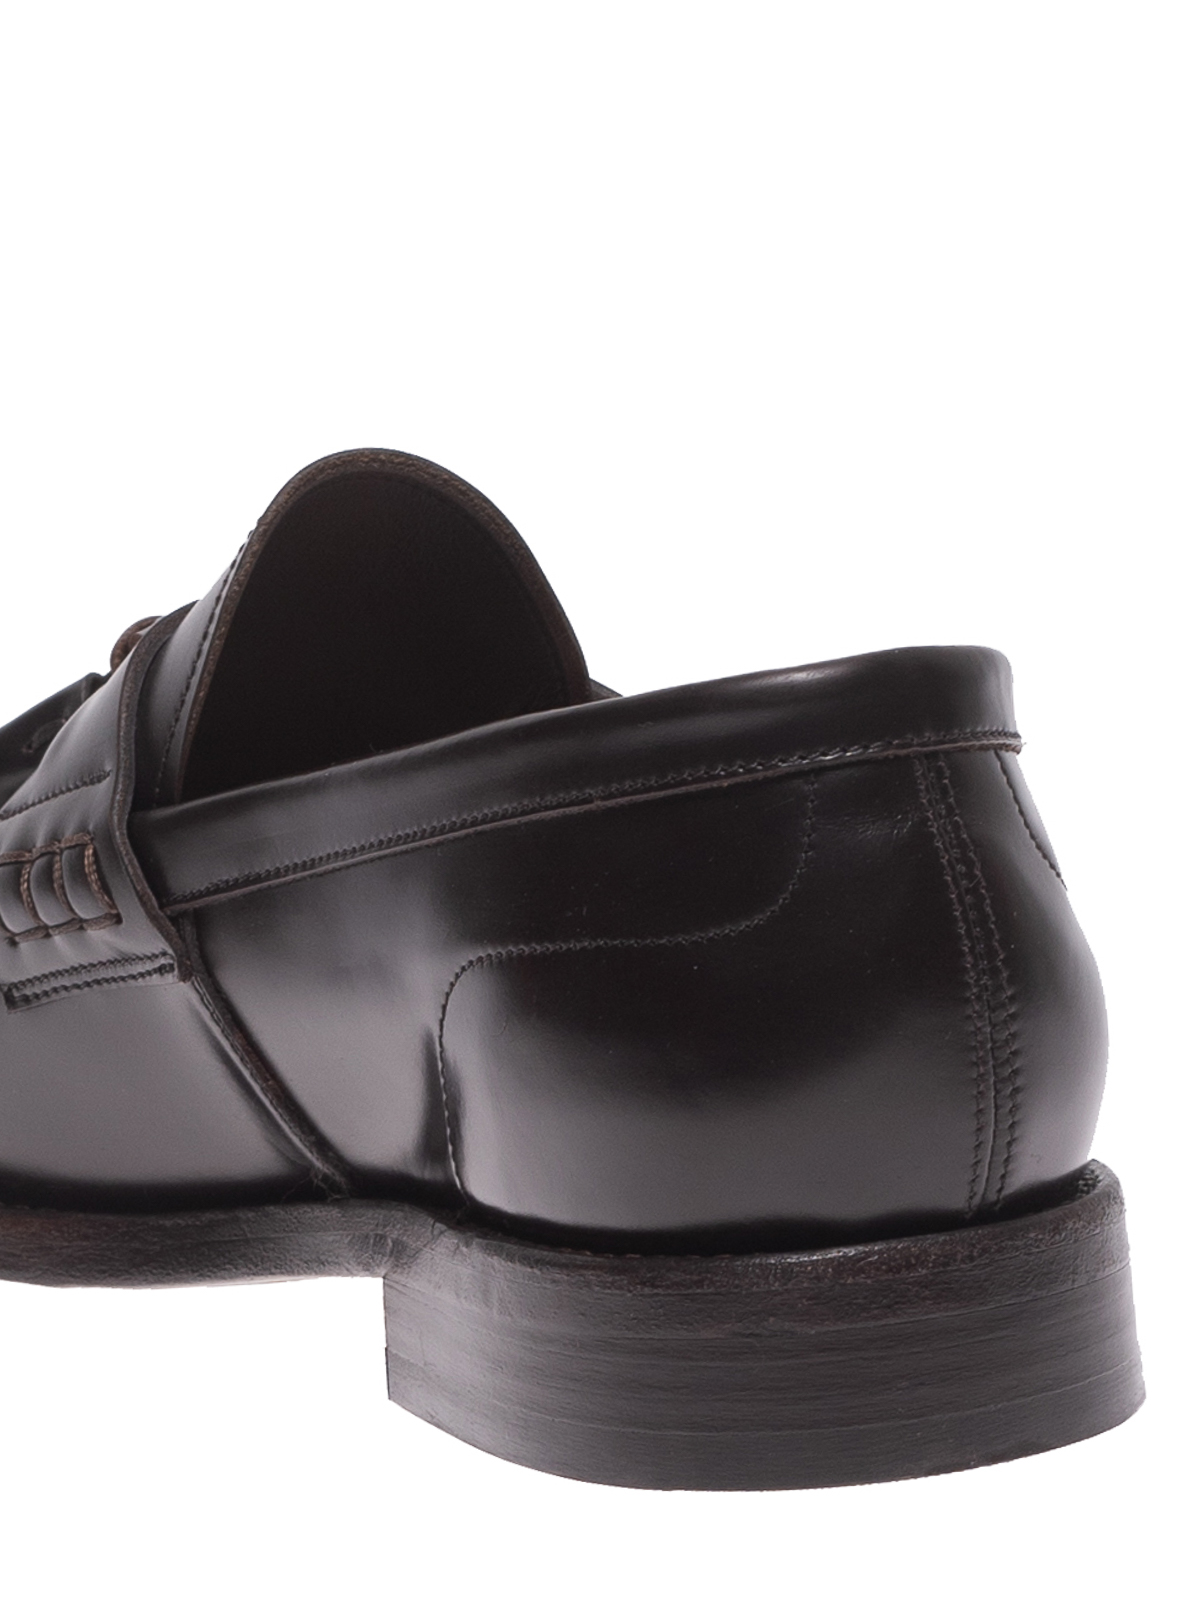 Buy Tassel Loafers for Men Online